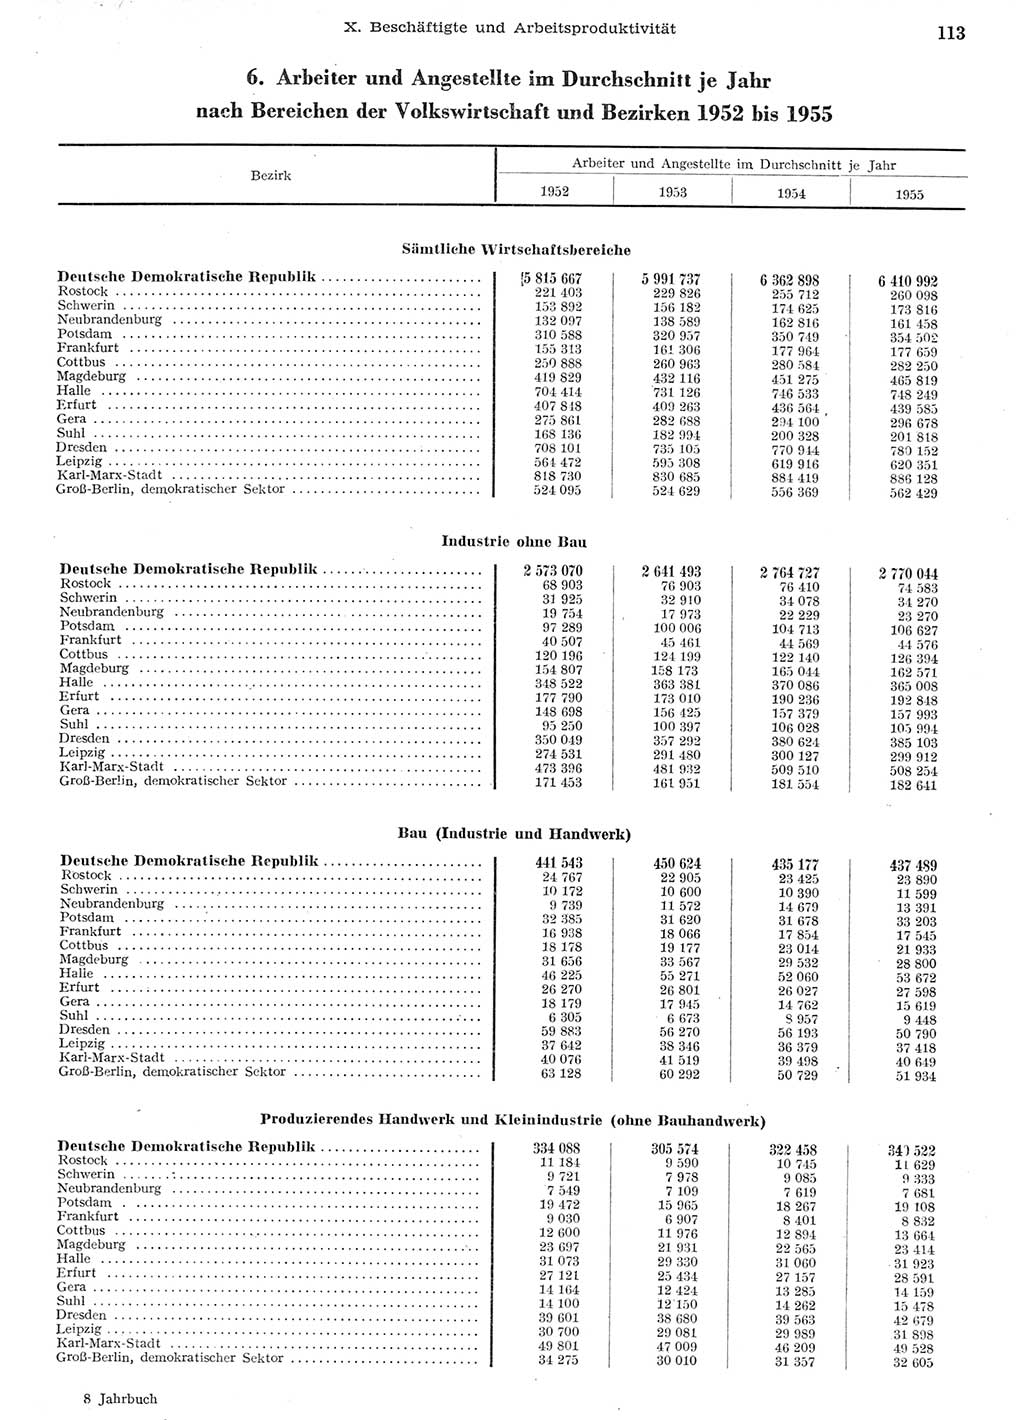 Statistisches Jahrbuch der Deutschen Demokratischen Republik (DDR) 1955, Seite 113 (Stat. Jb. DDR 1955, S. 113)